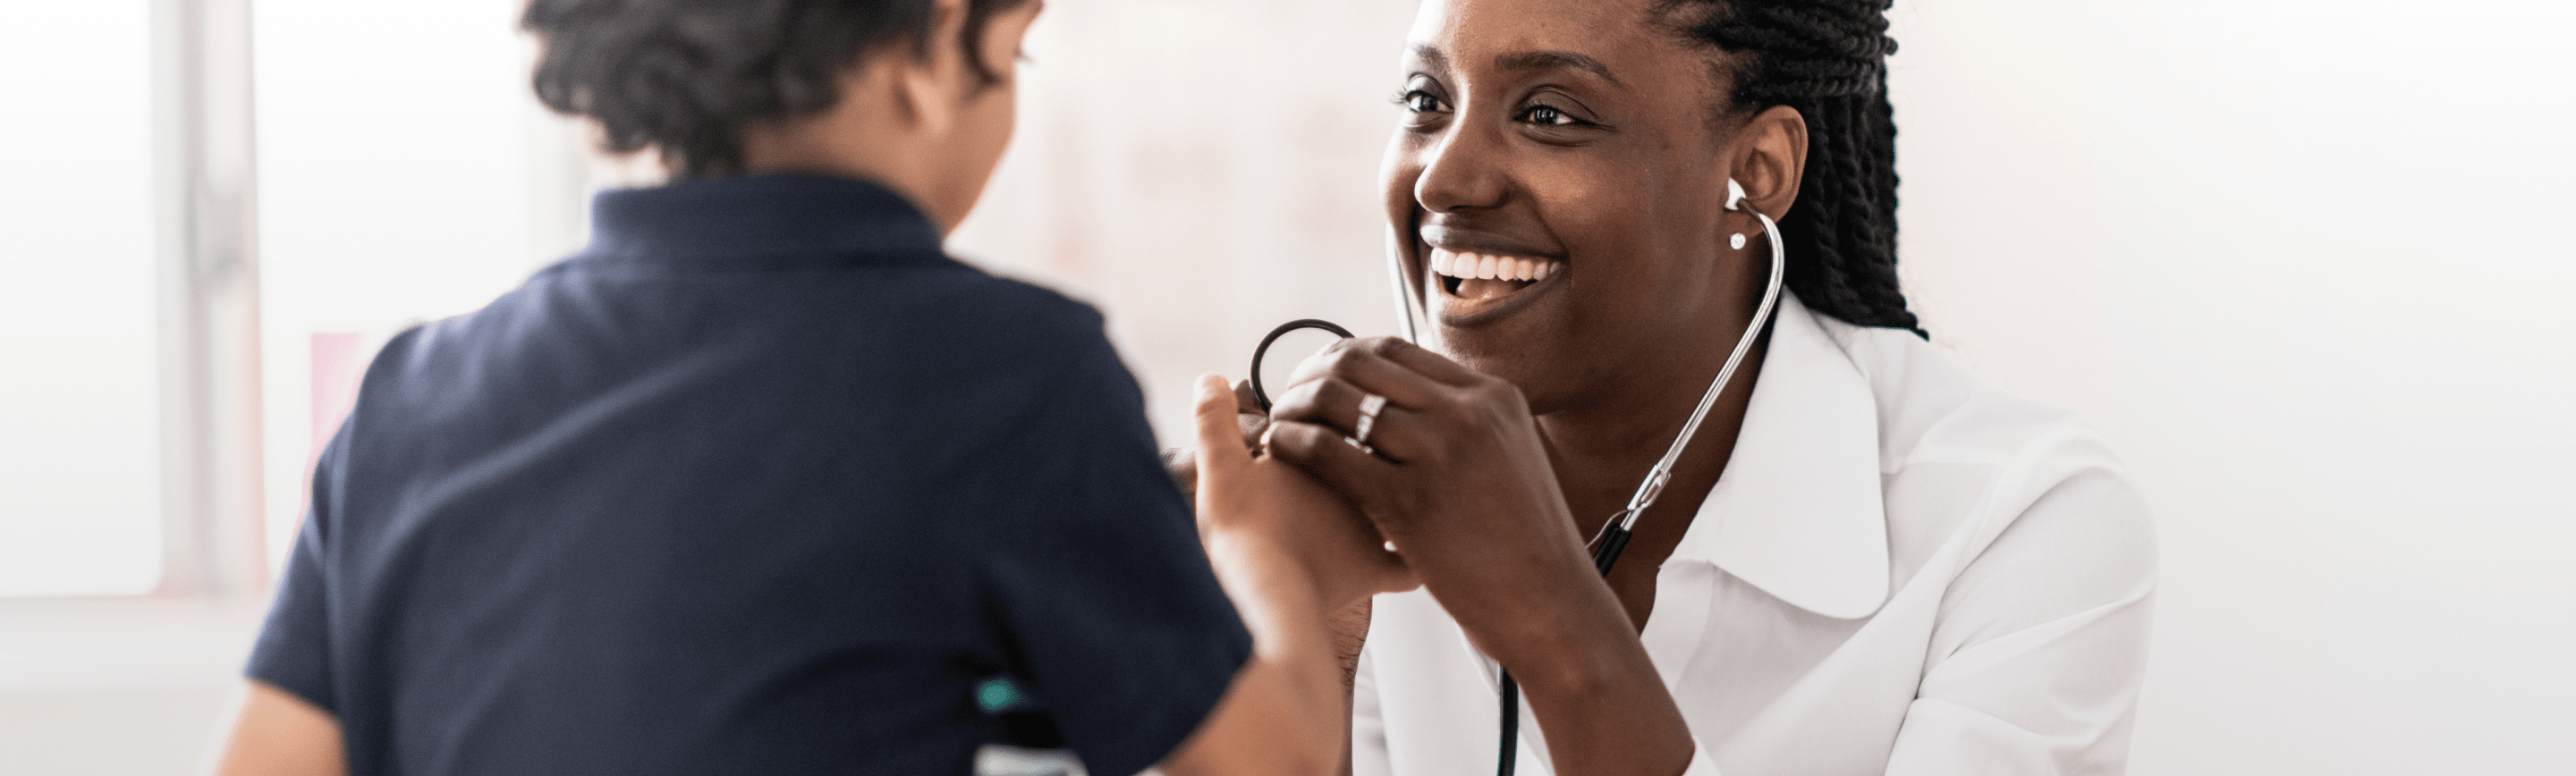 Médica que le sonríe a un niño mientras le toma la presión arterial.